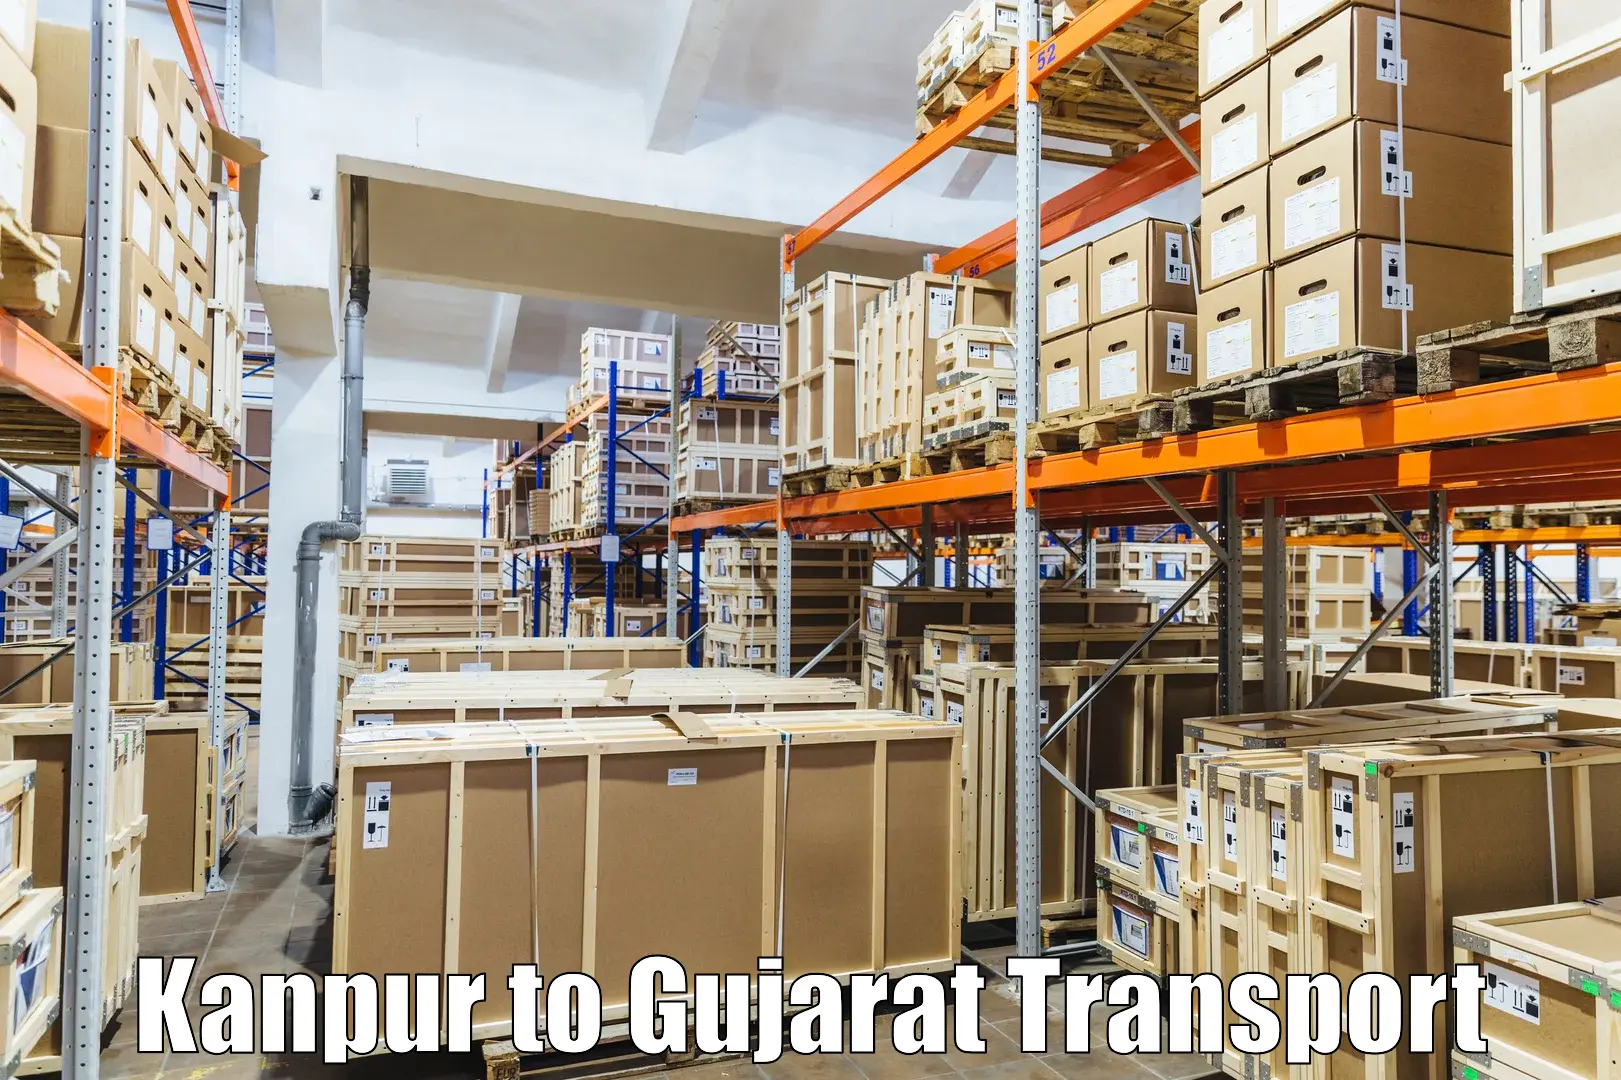 Shipping partner Kanpur to Dhrangadhra